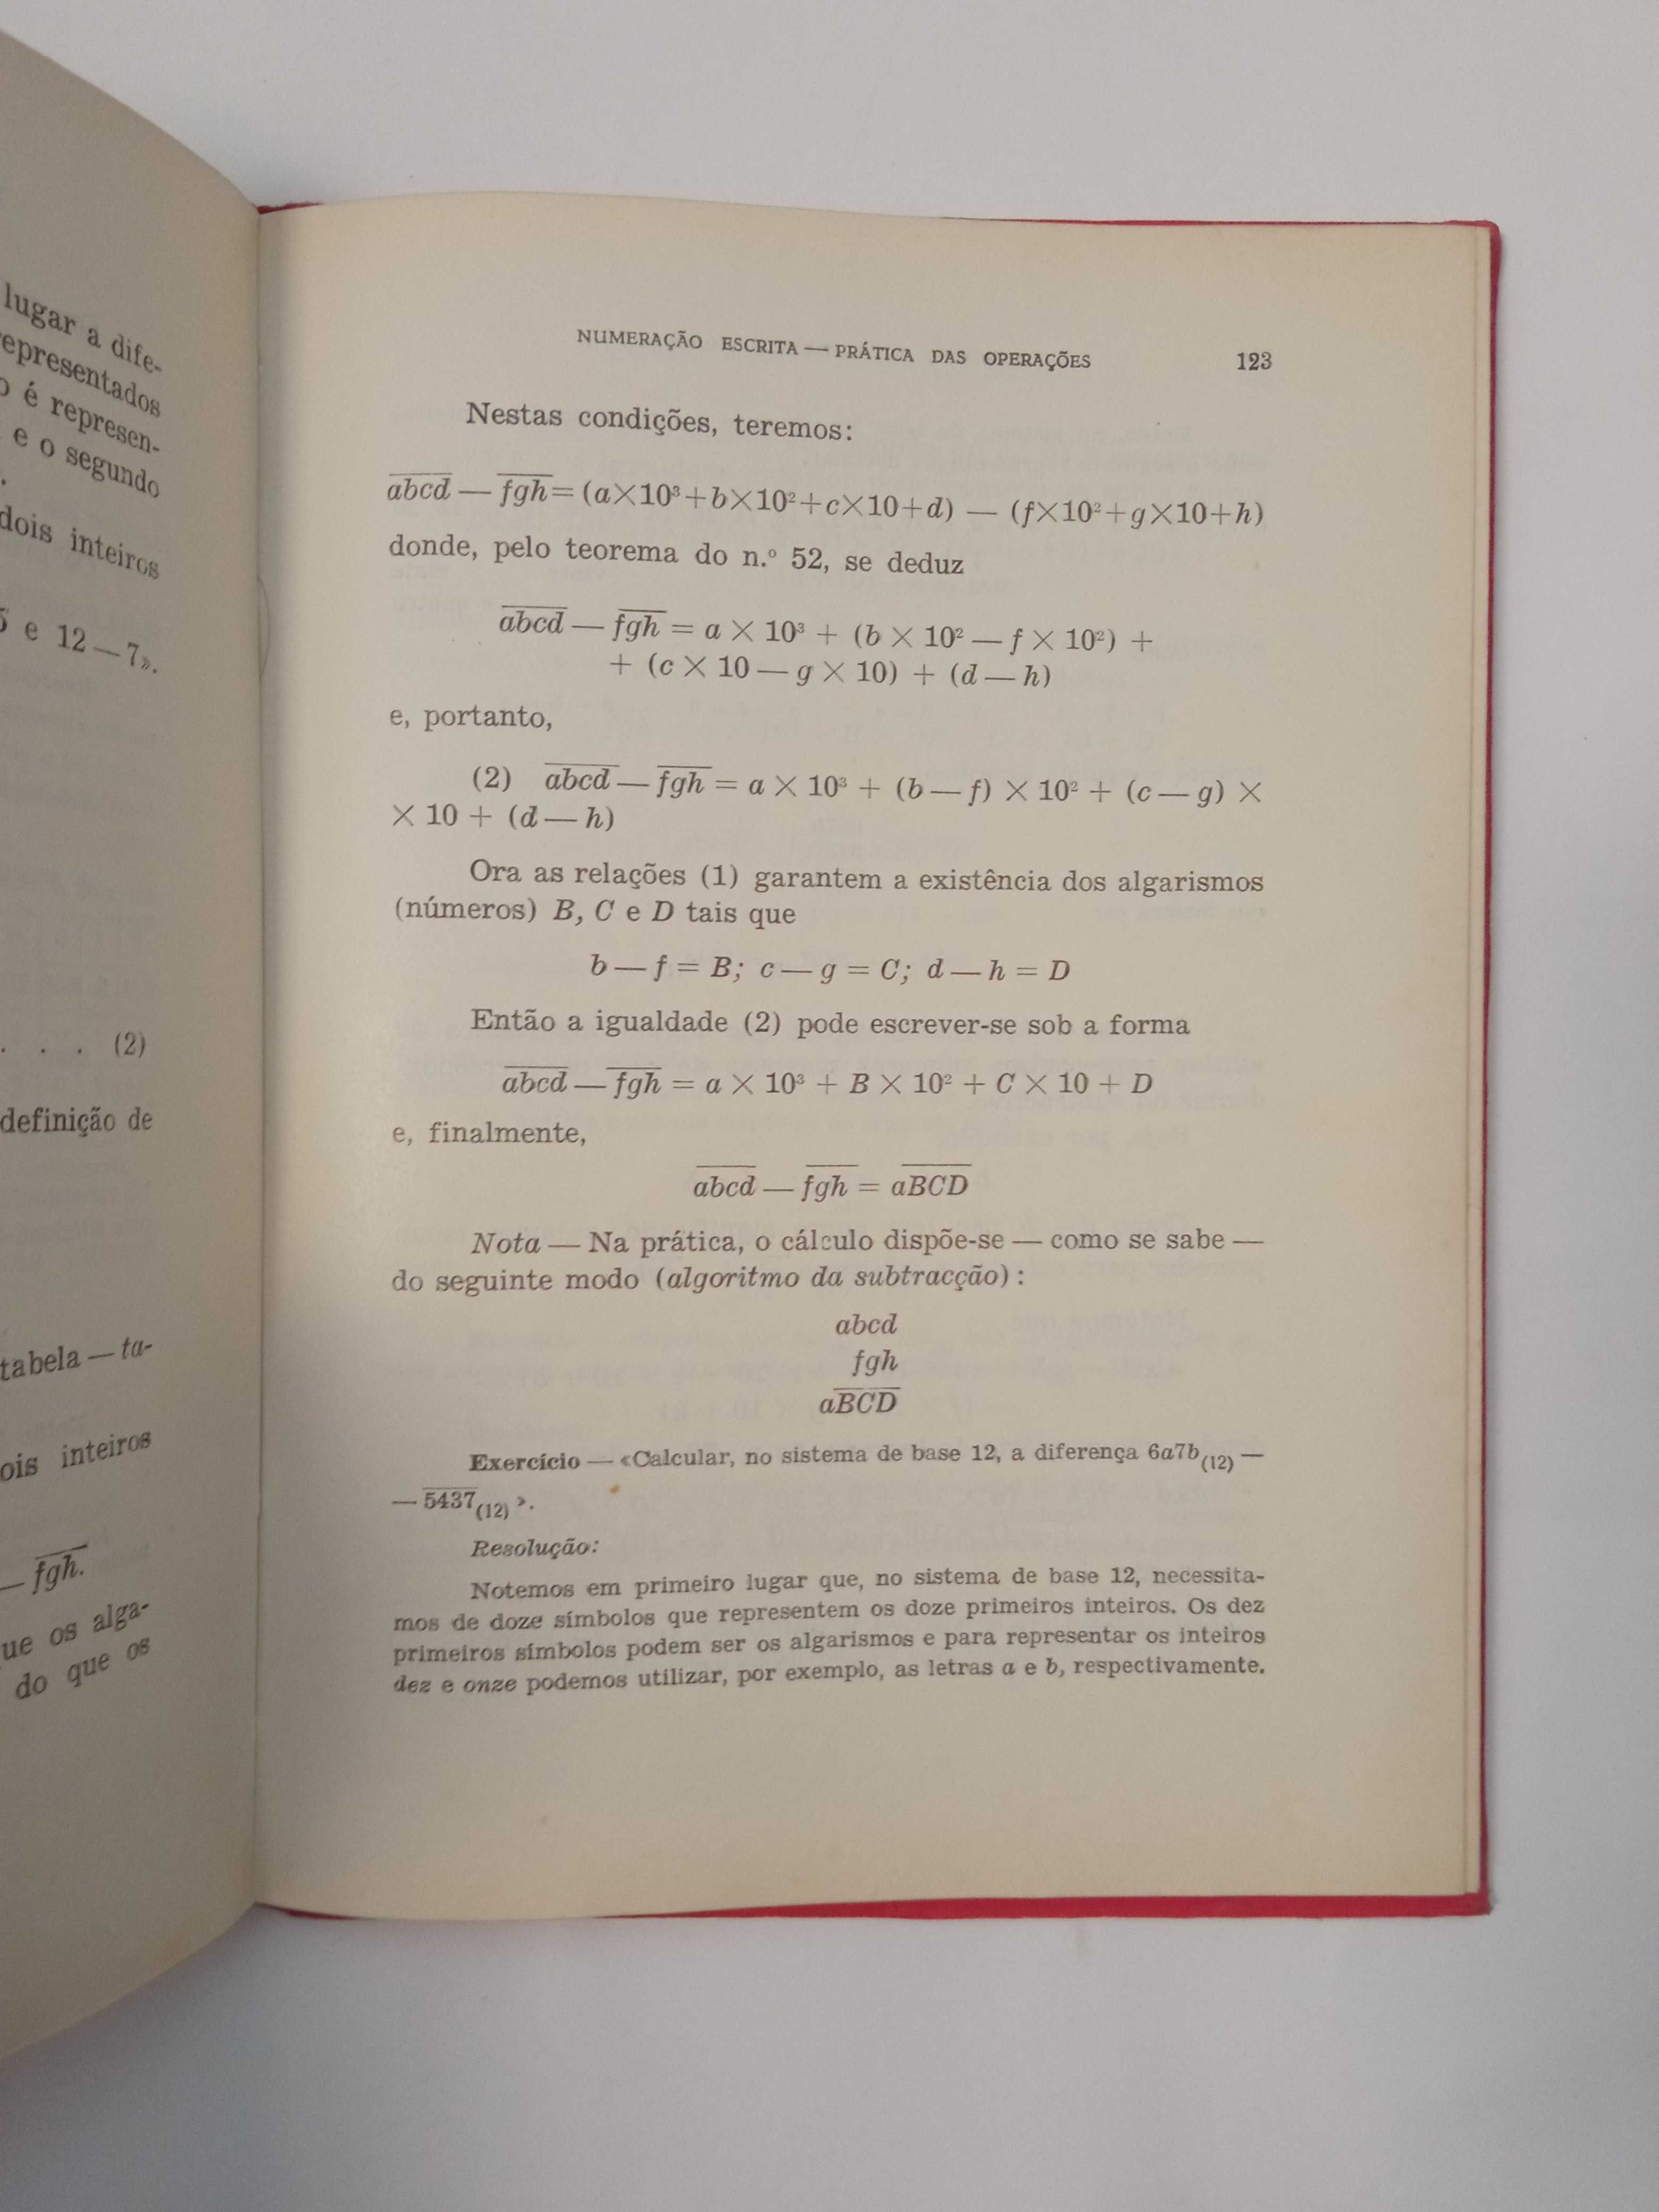 Compêndio de Aritmética Racional, de J. Jorge G. Calado